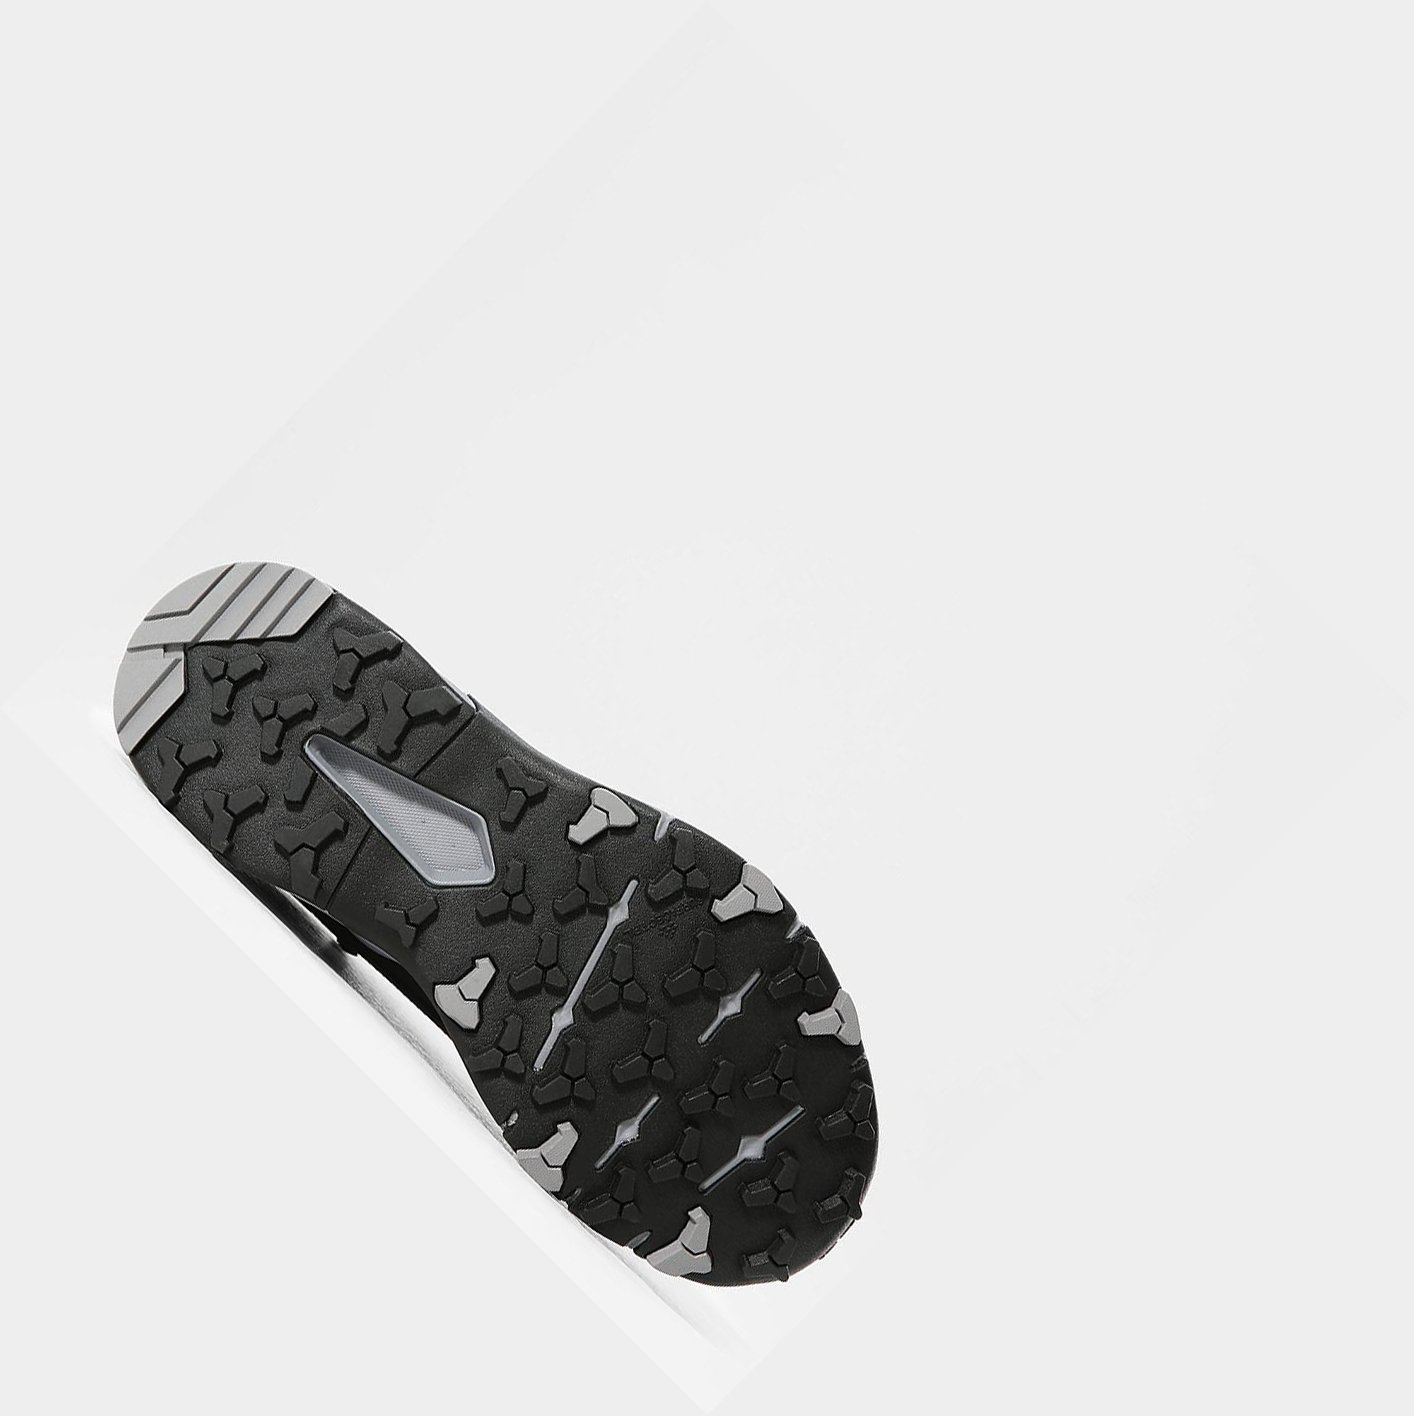 Women's The North Face VECTIV EXPLORIS FUTURELIGHT™ Walking Boots Black Grey | US912XKGJ